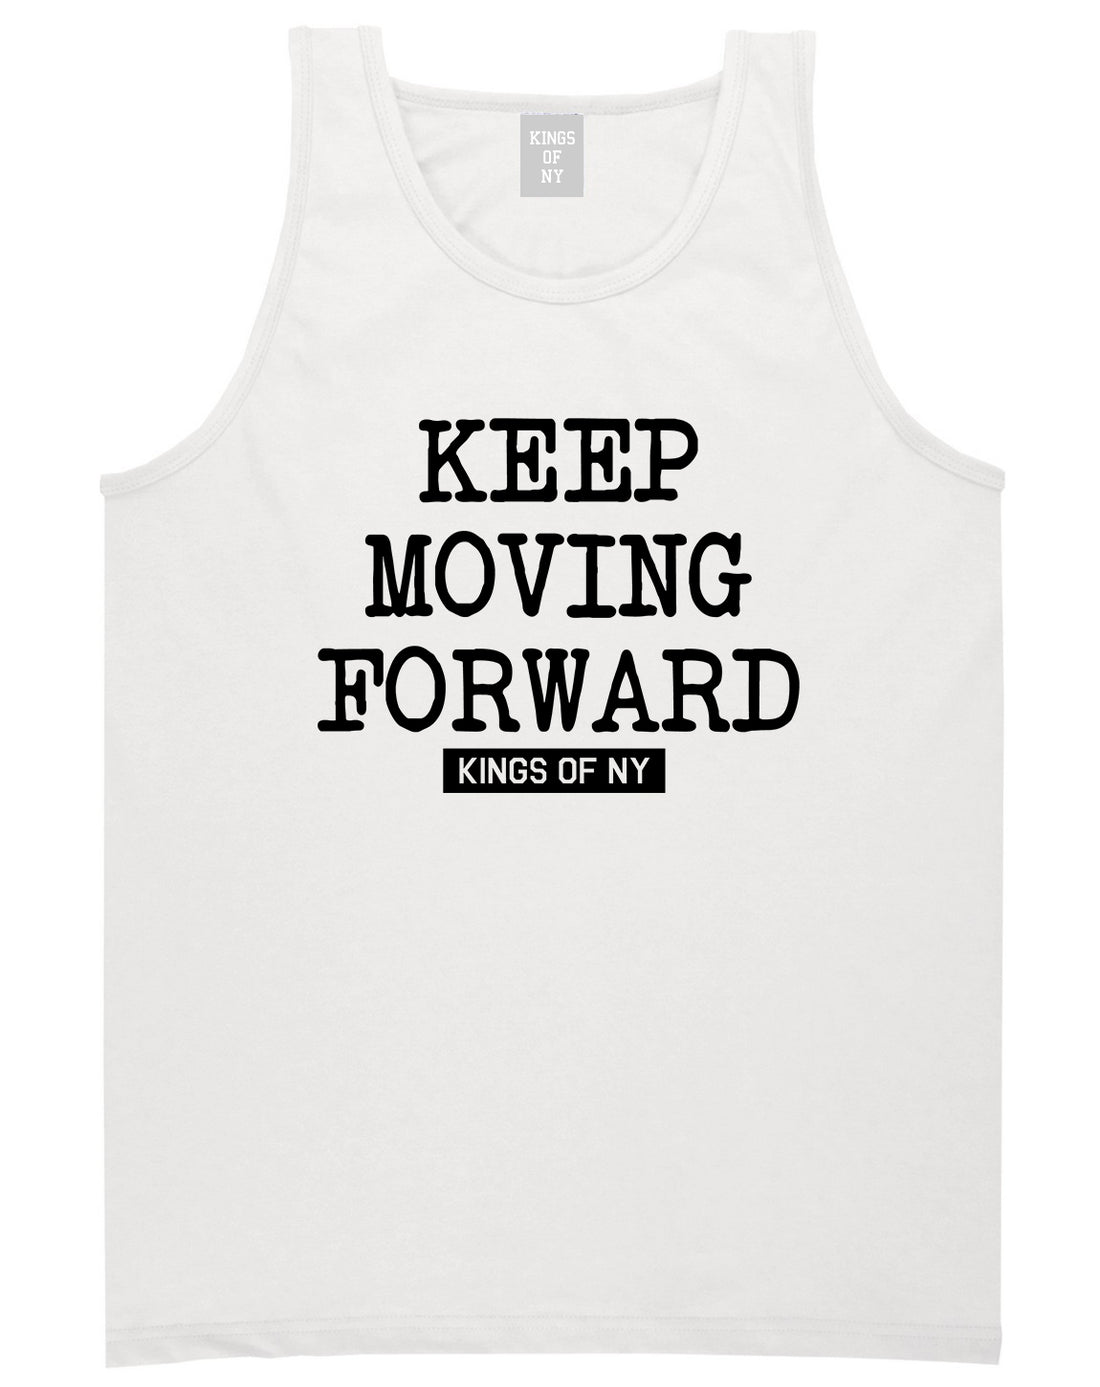 Keep Moving Forward Mens Tank Top Shirt White